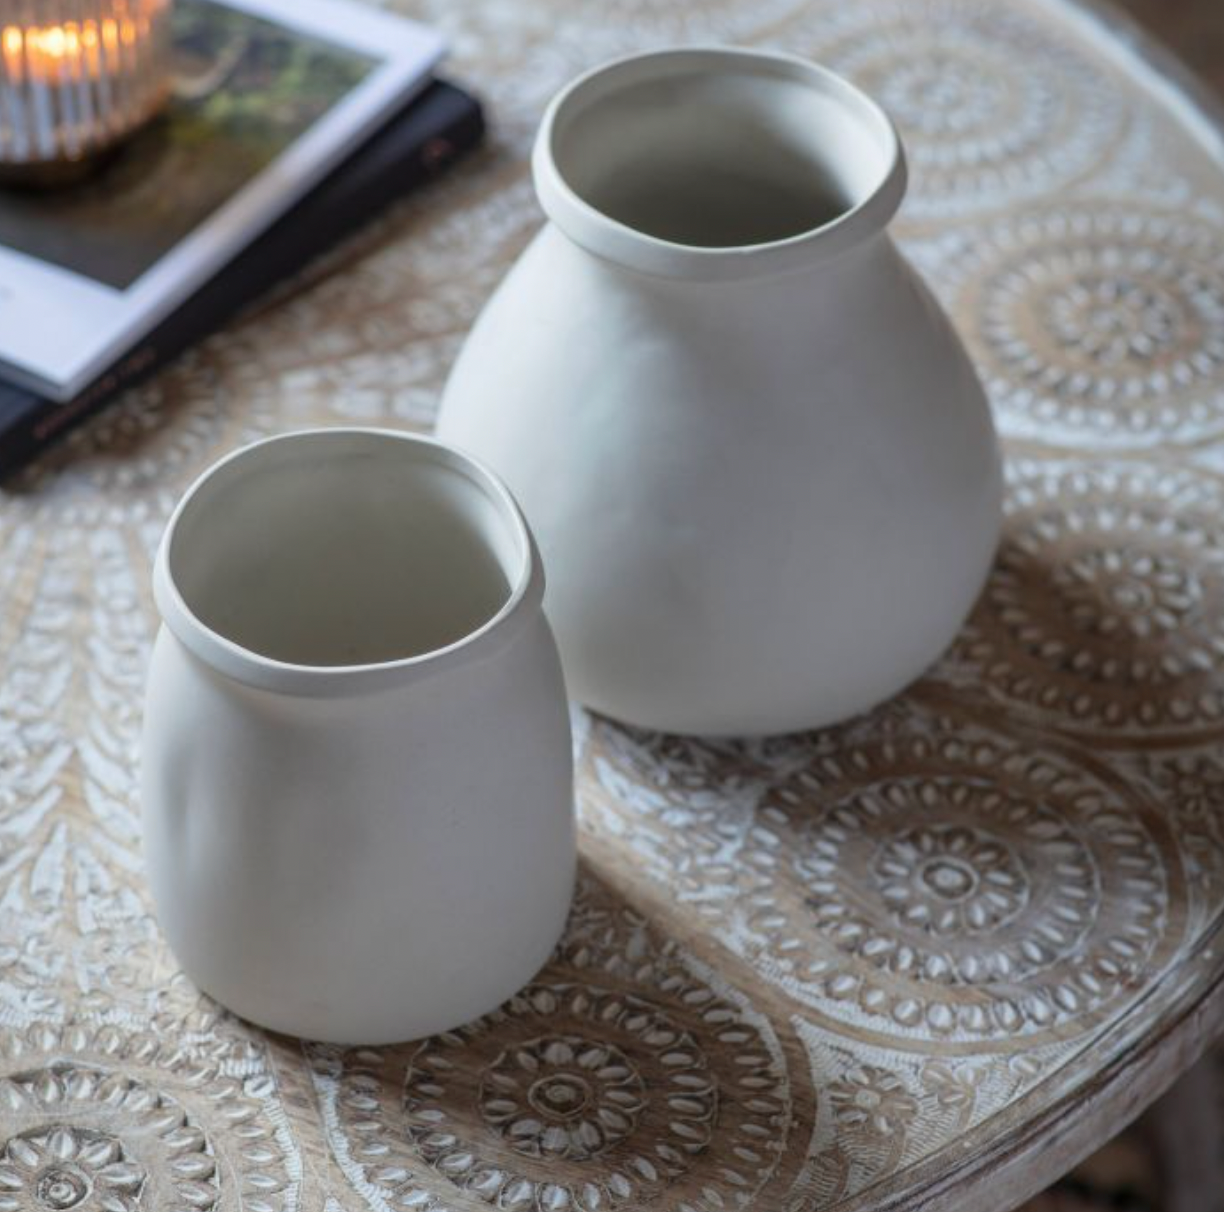 Cream Stoneware Ikoma Vase